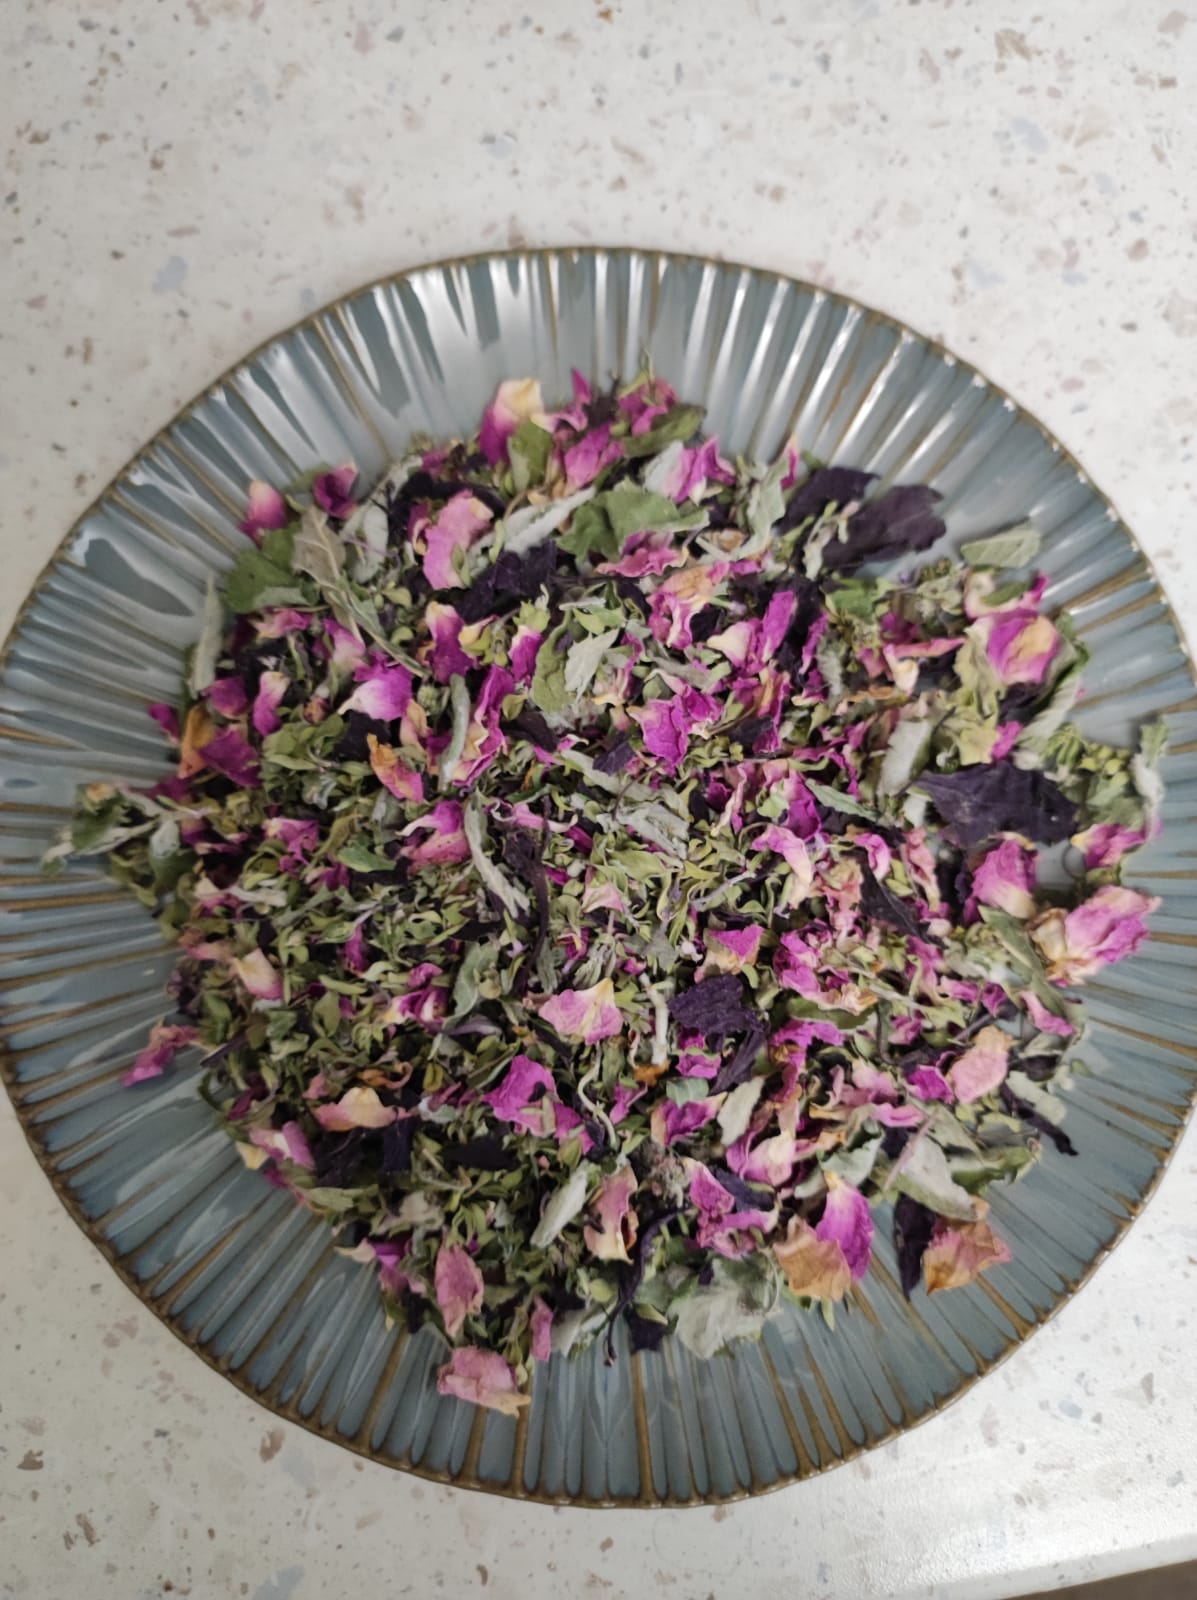 Darman Tea No13 - Summer Drops (Pomegranate Seeds, Mint Bush, Red Basil, Rose Petals, Mint)